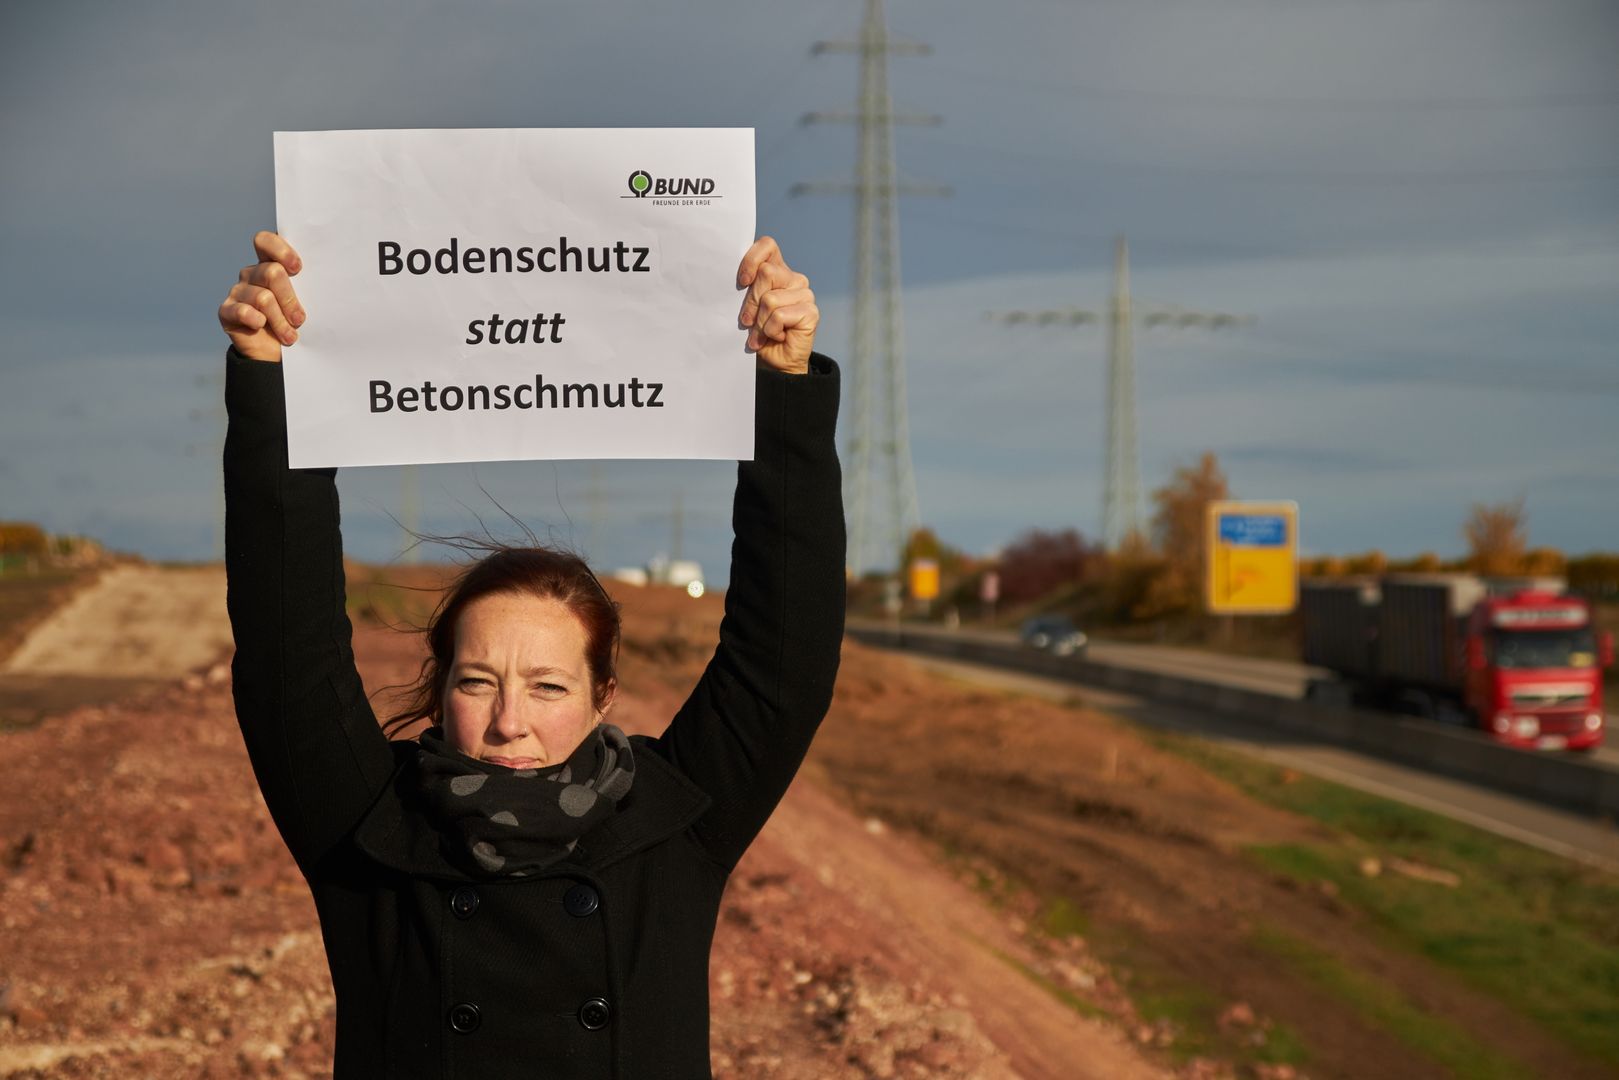 Jenni Follmann BUND hält ein Schild hoch auf dem "Bodenschutz statt Betonschmutz" steht